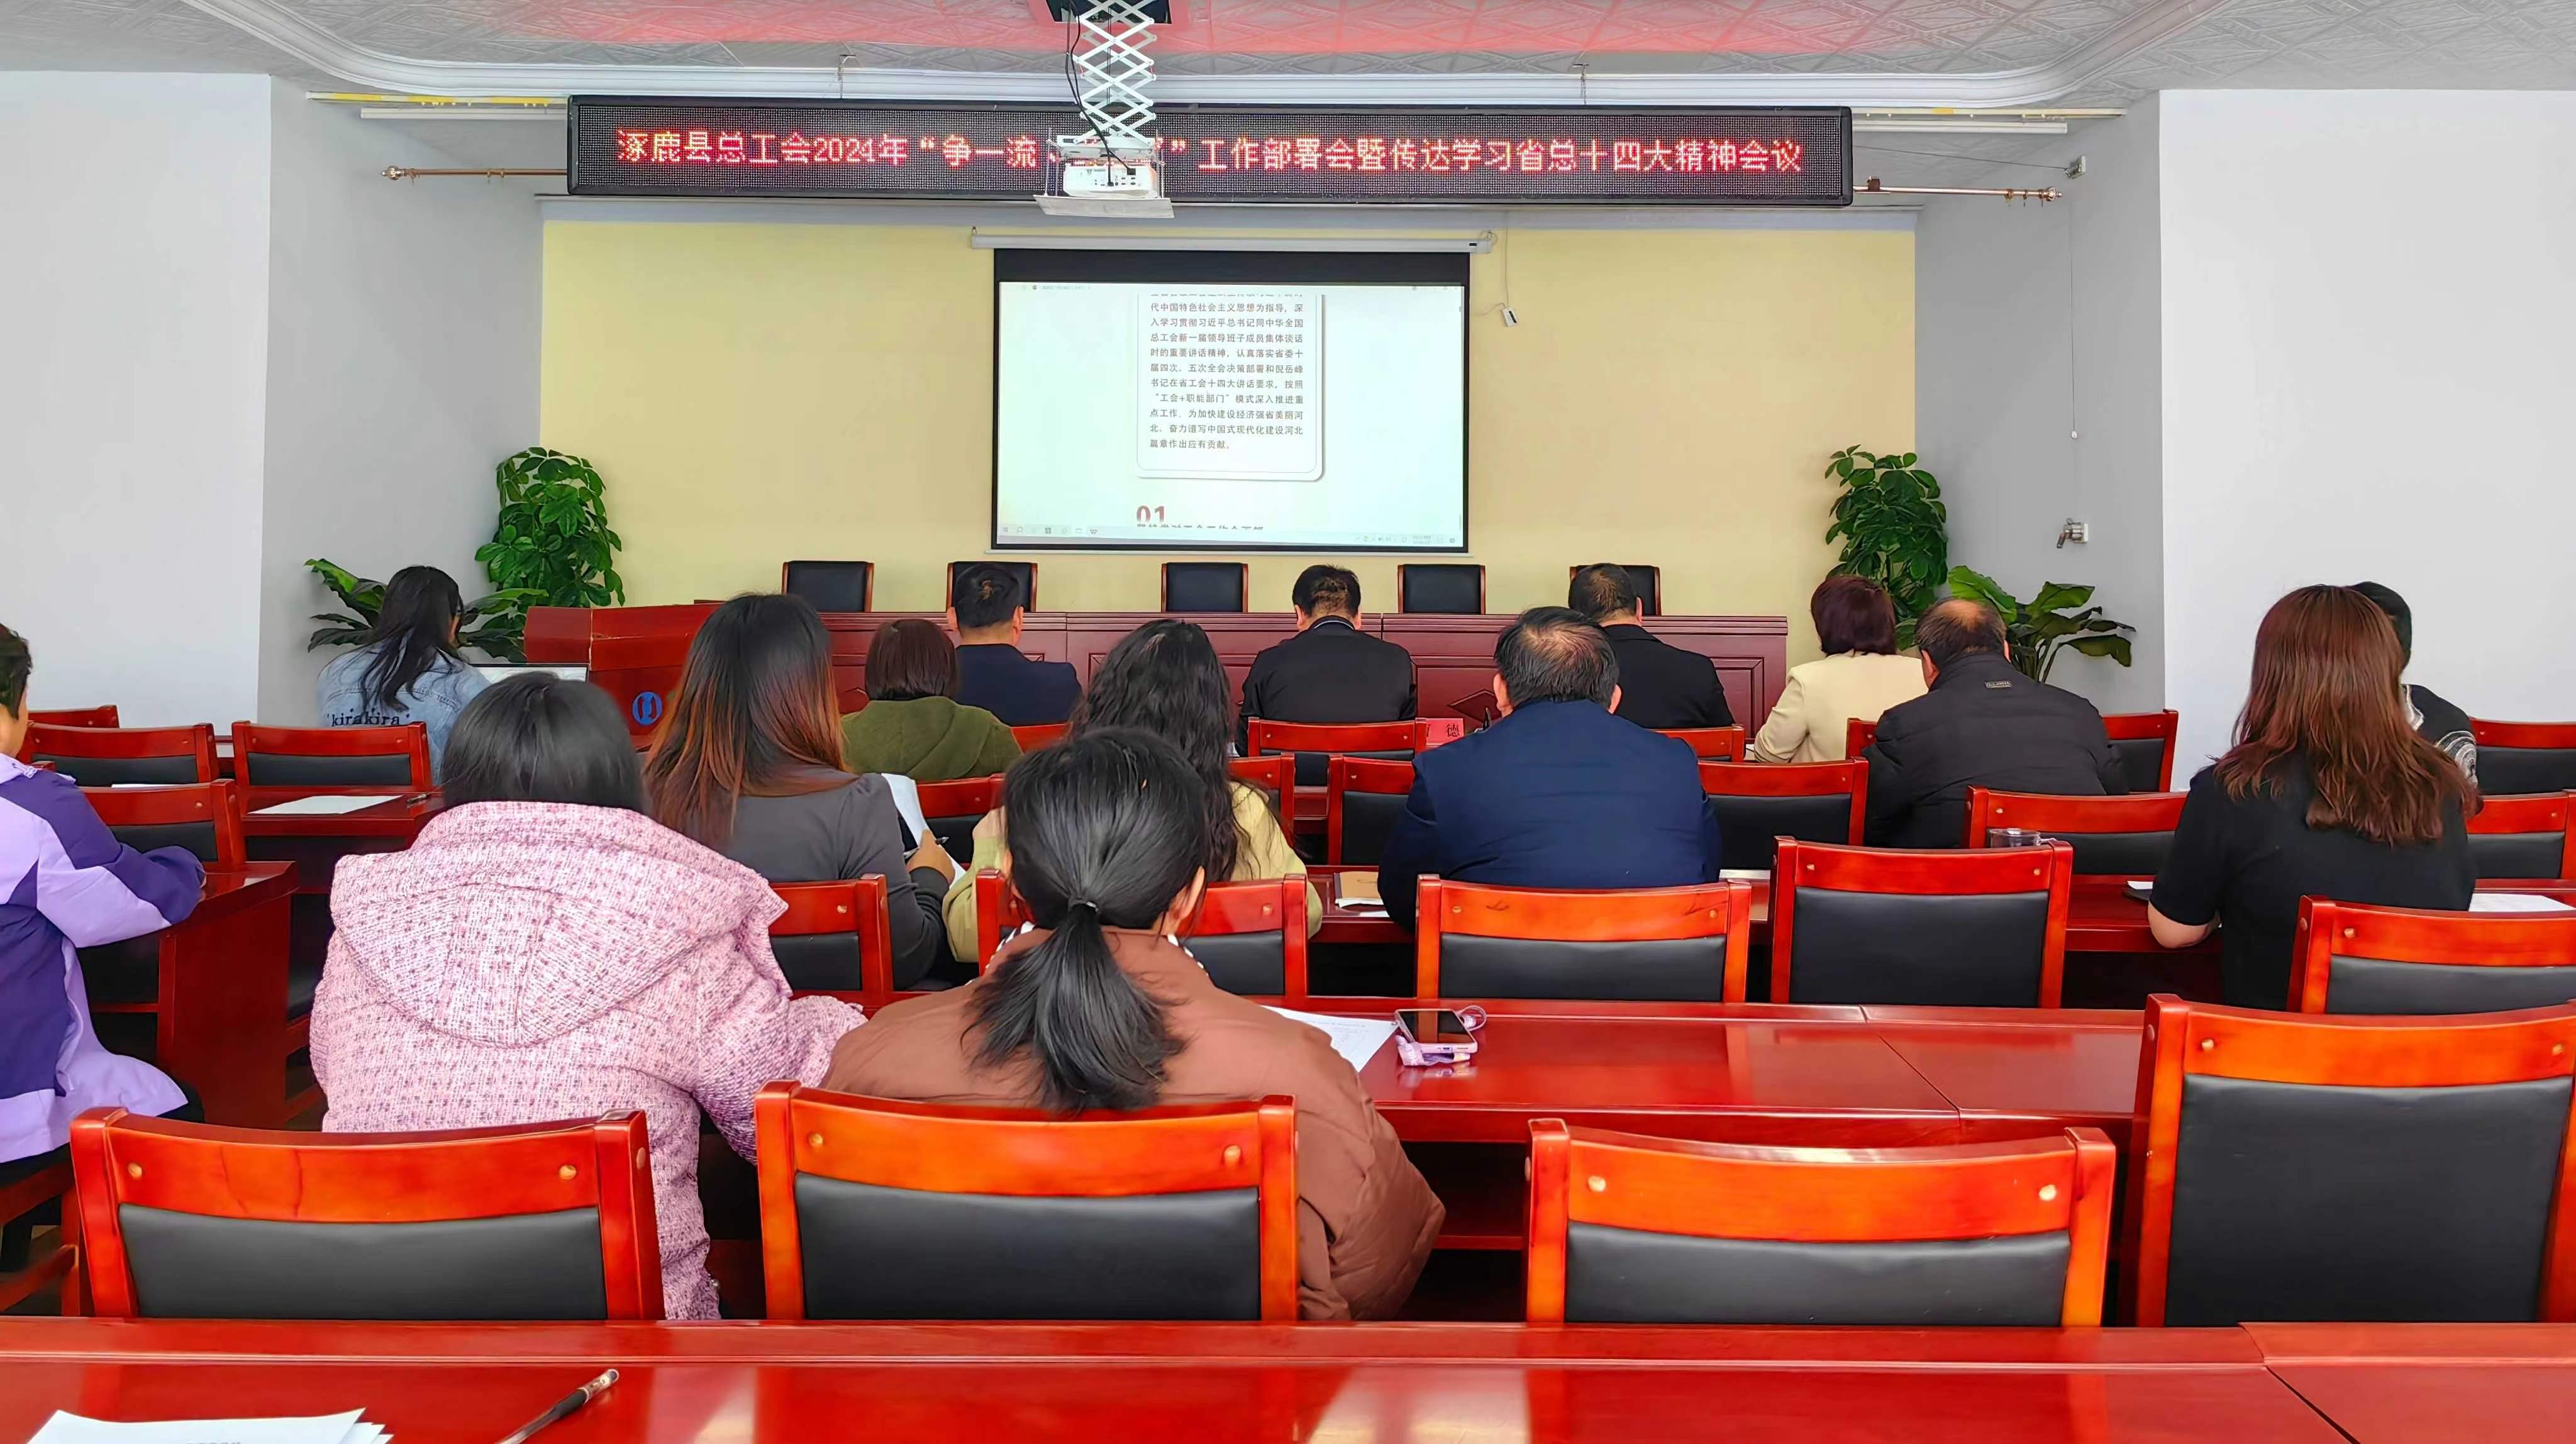 涿鹿县总工会传达学习省总十四大会议精神并围绕“争一流、当冠军”活动进行工作部署